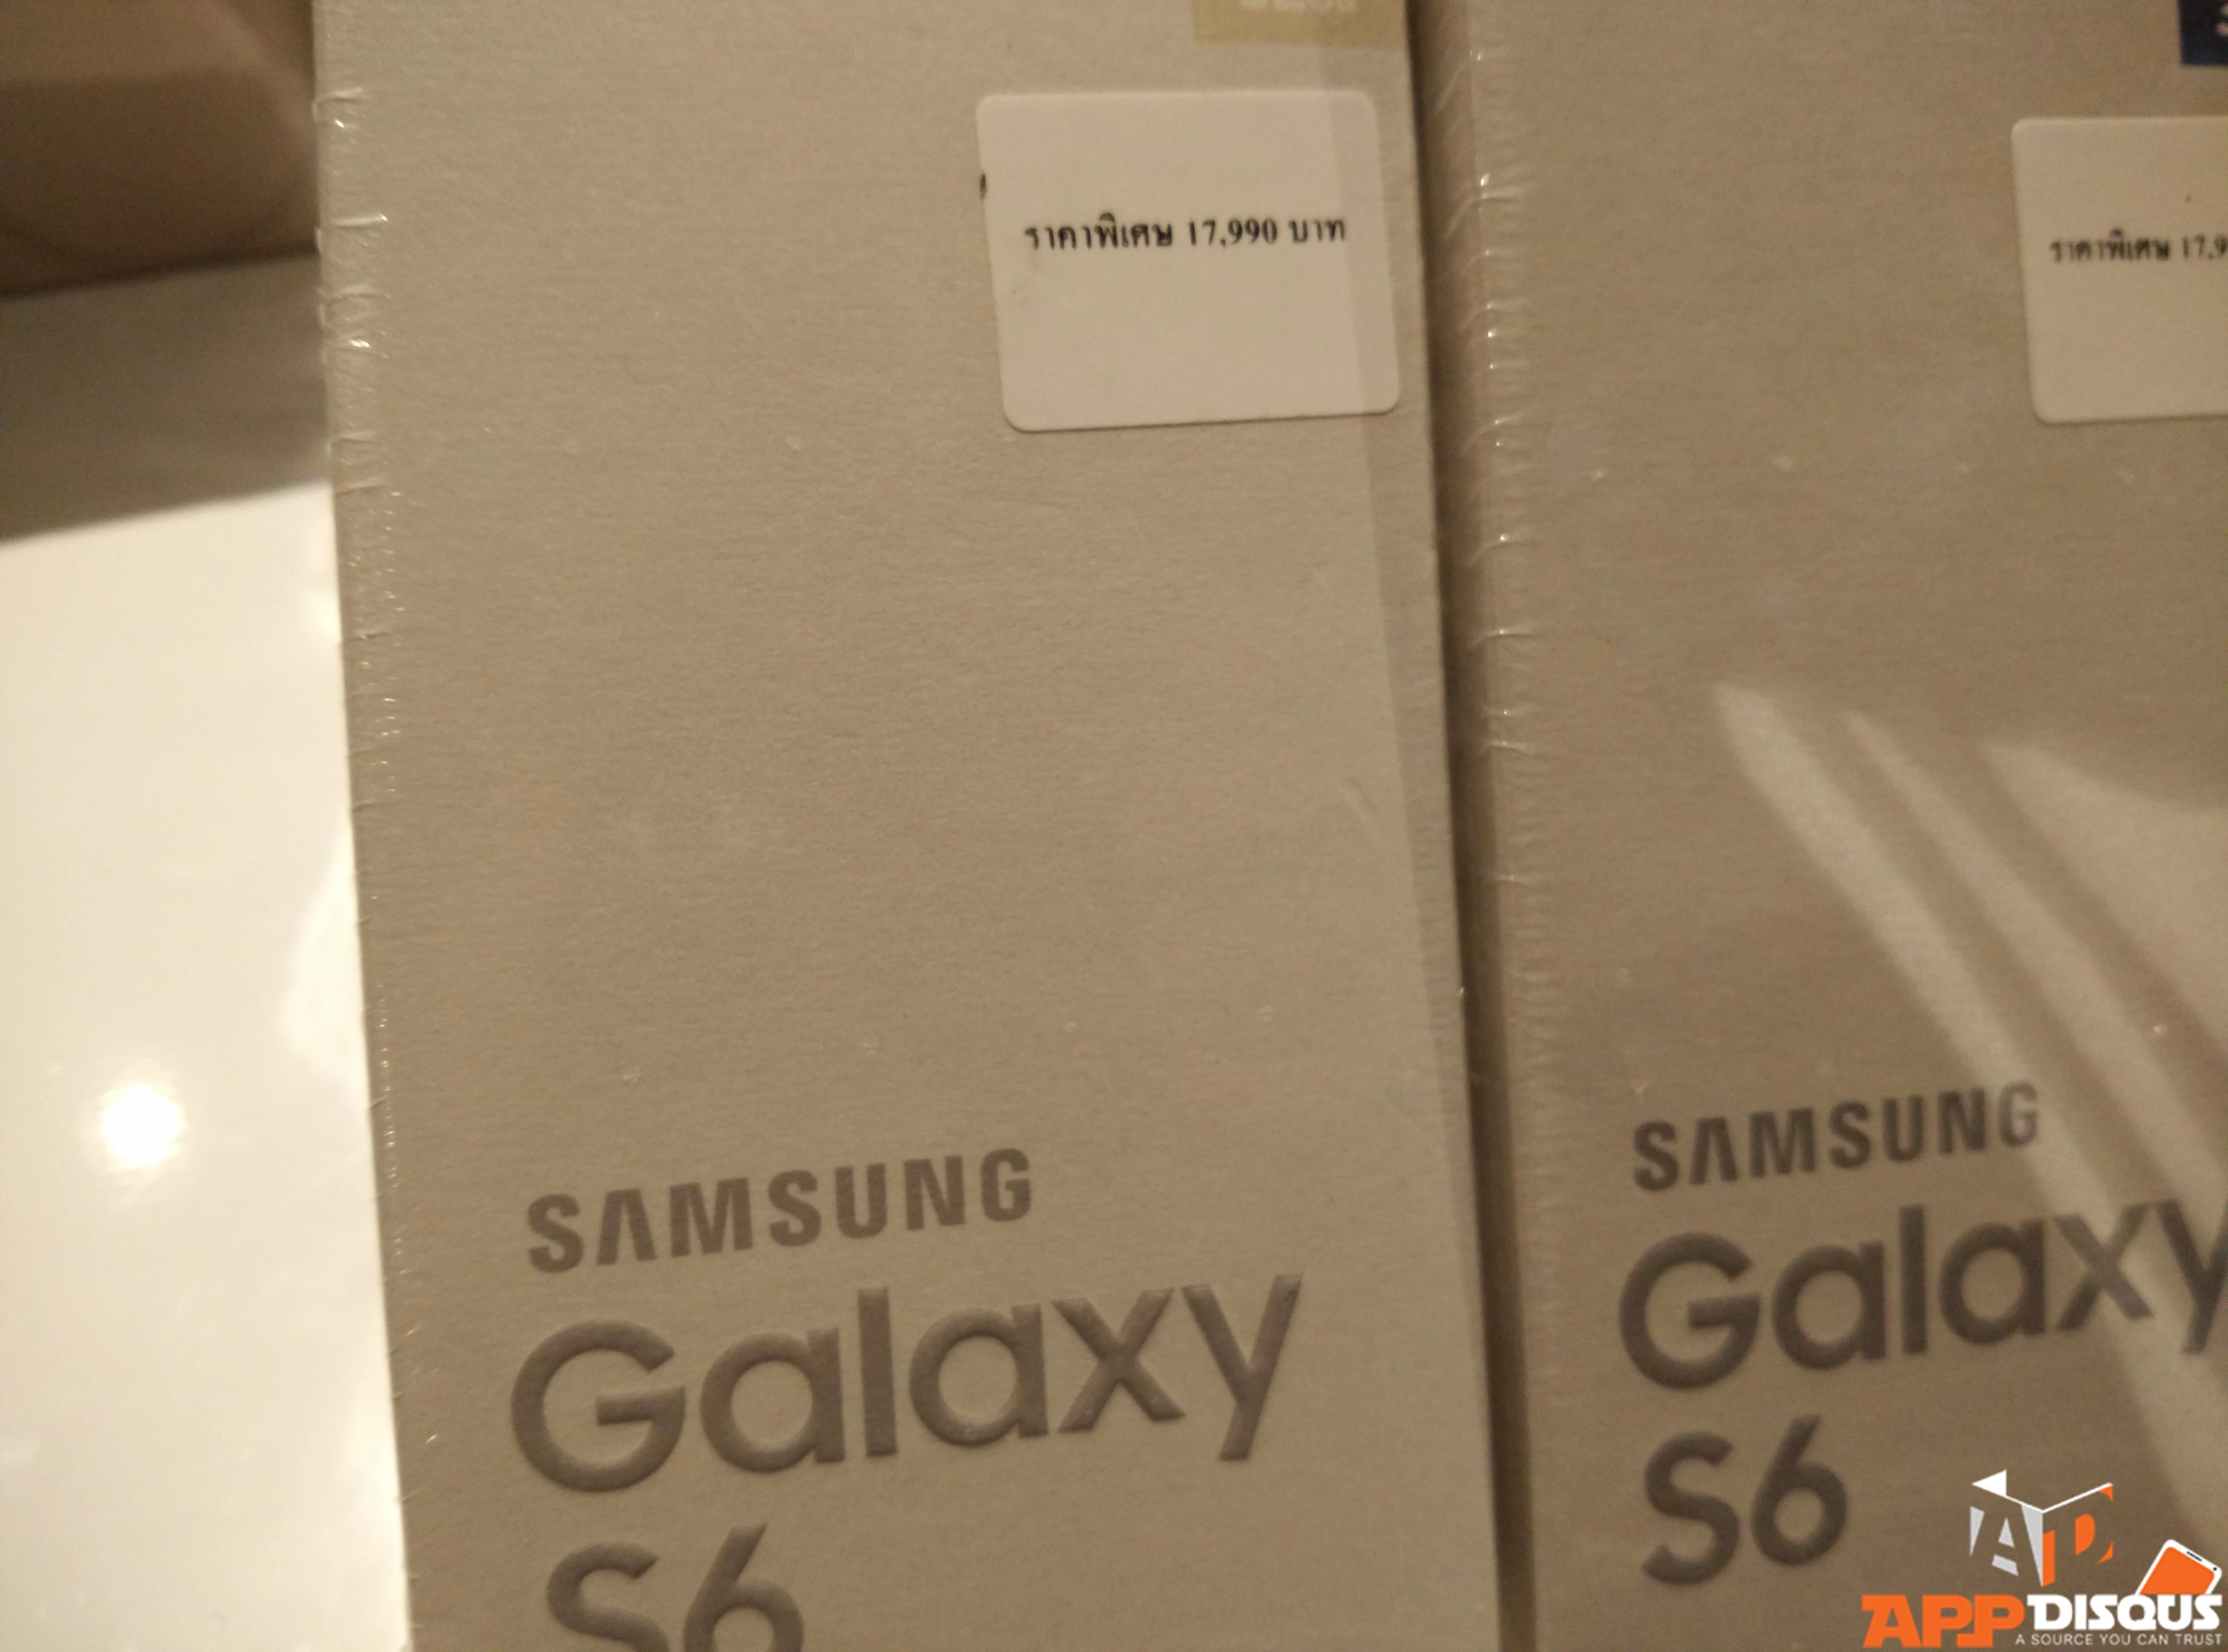 IMG 20150925 184613 | JayMart | Jaymart ลดราคา Galaxy S6 เหลือ 17,990 บาท Lumia 1020 ราคา 7,990 บาท และอื่นๆ อีกมาก